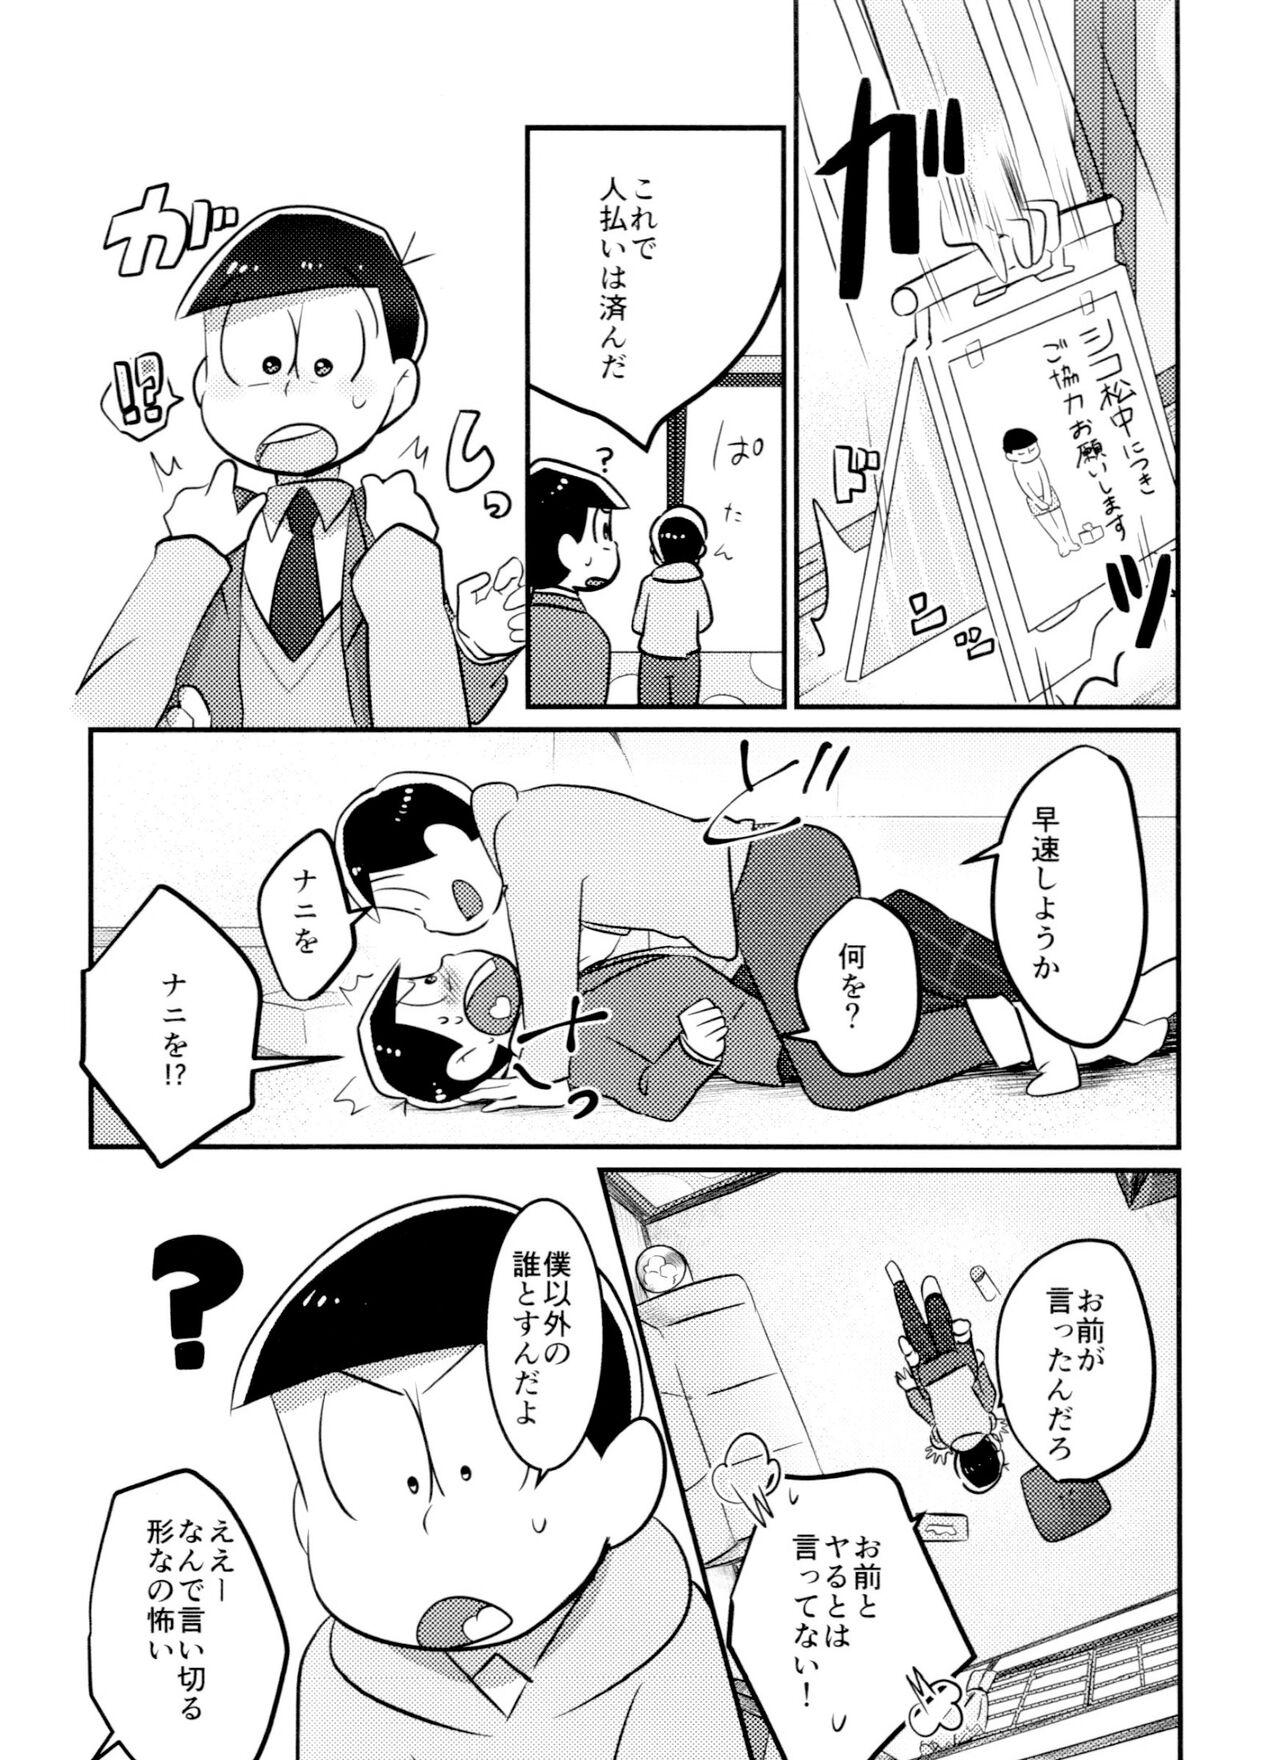 Vergon Kimi wa itsu kara otonana no!? - Osomatsu-san Cousin - Page 7